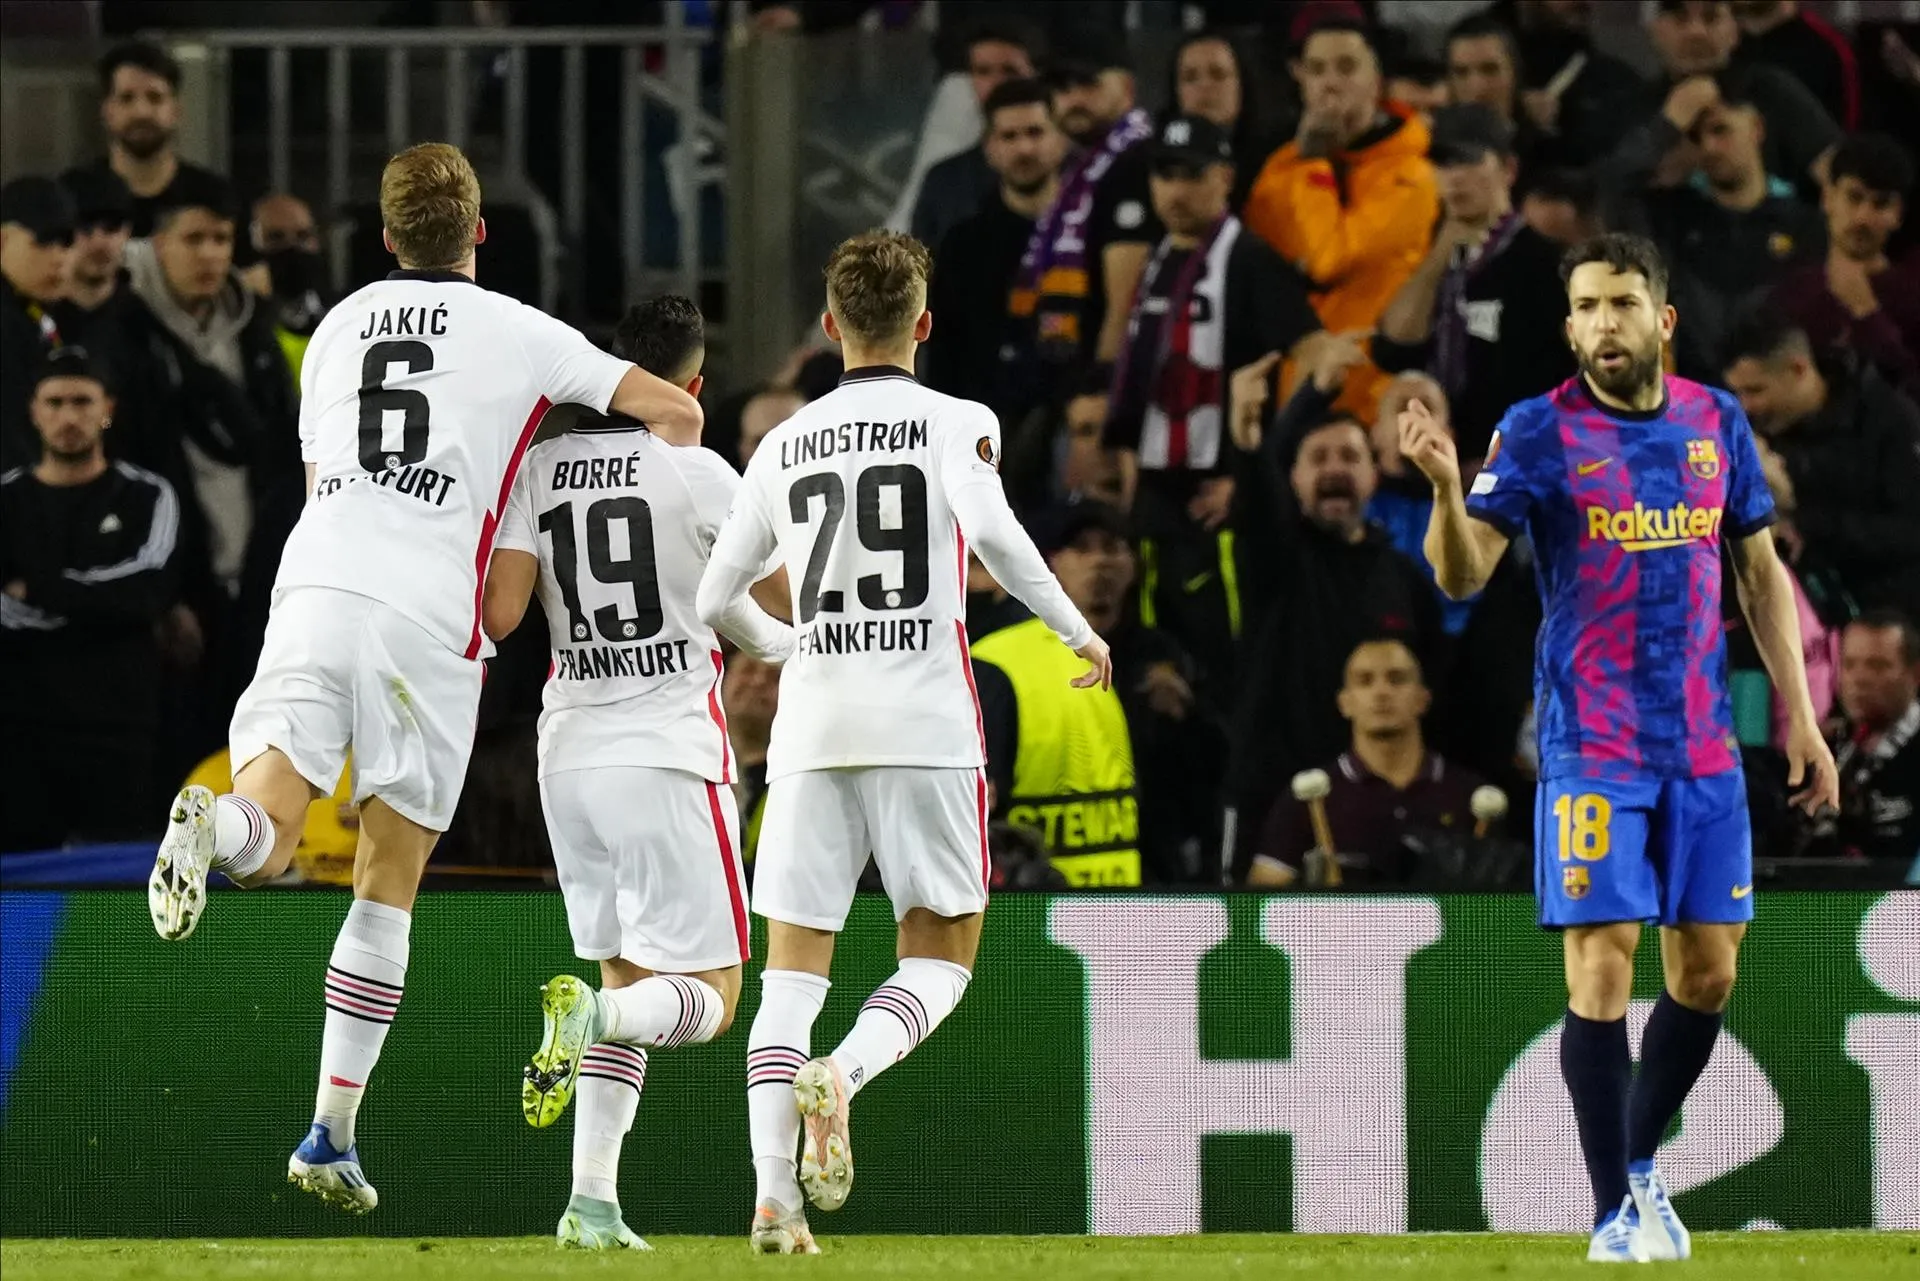 El Barça eliminado sorpresivamente en su casa por alemanes